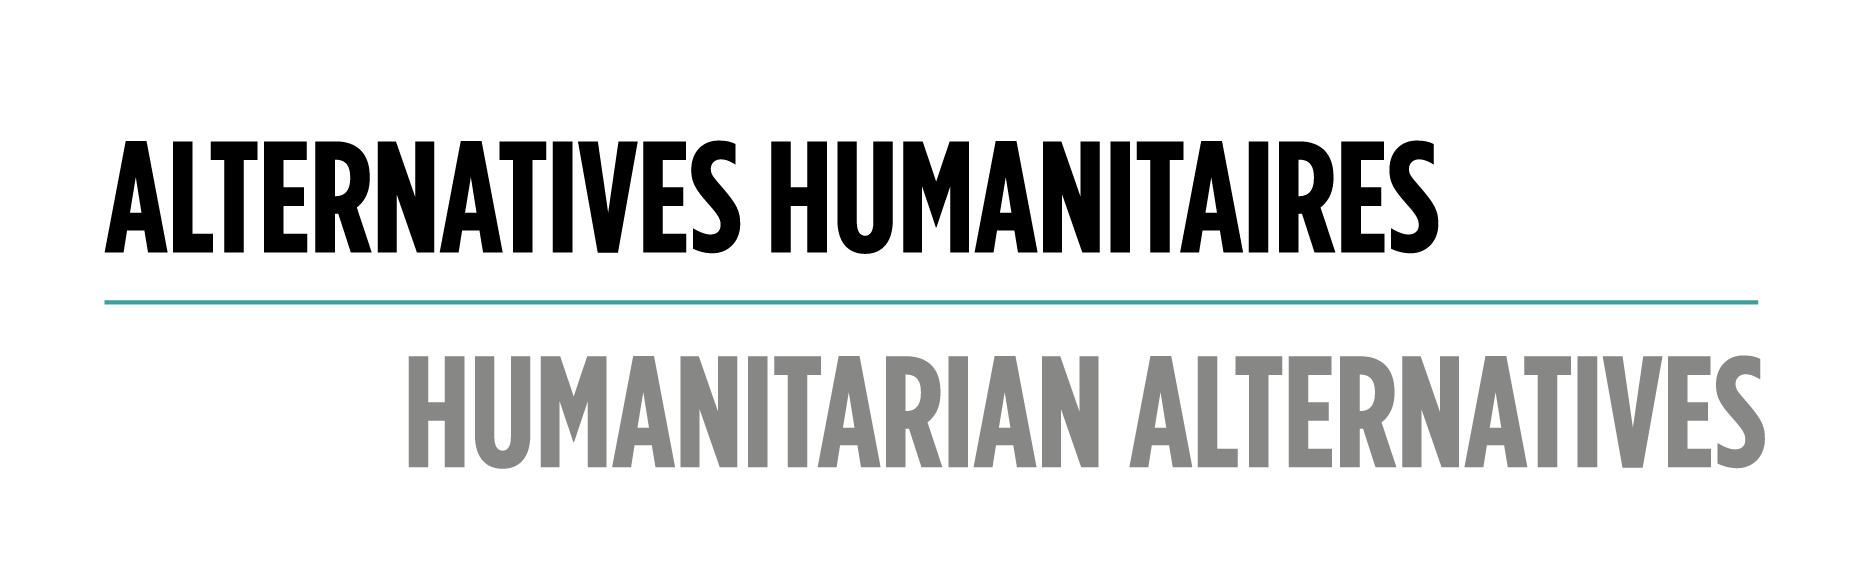 Humanitarian Alternatives